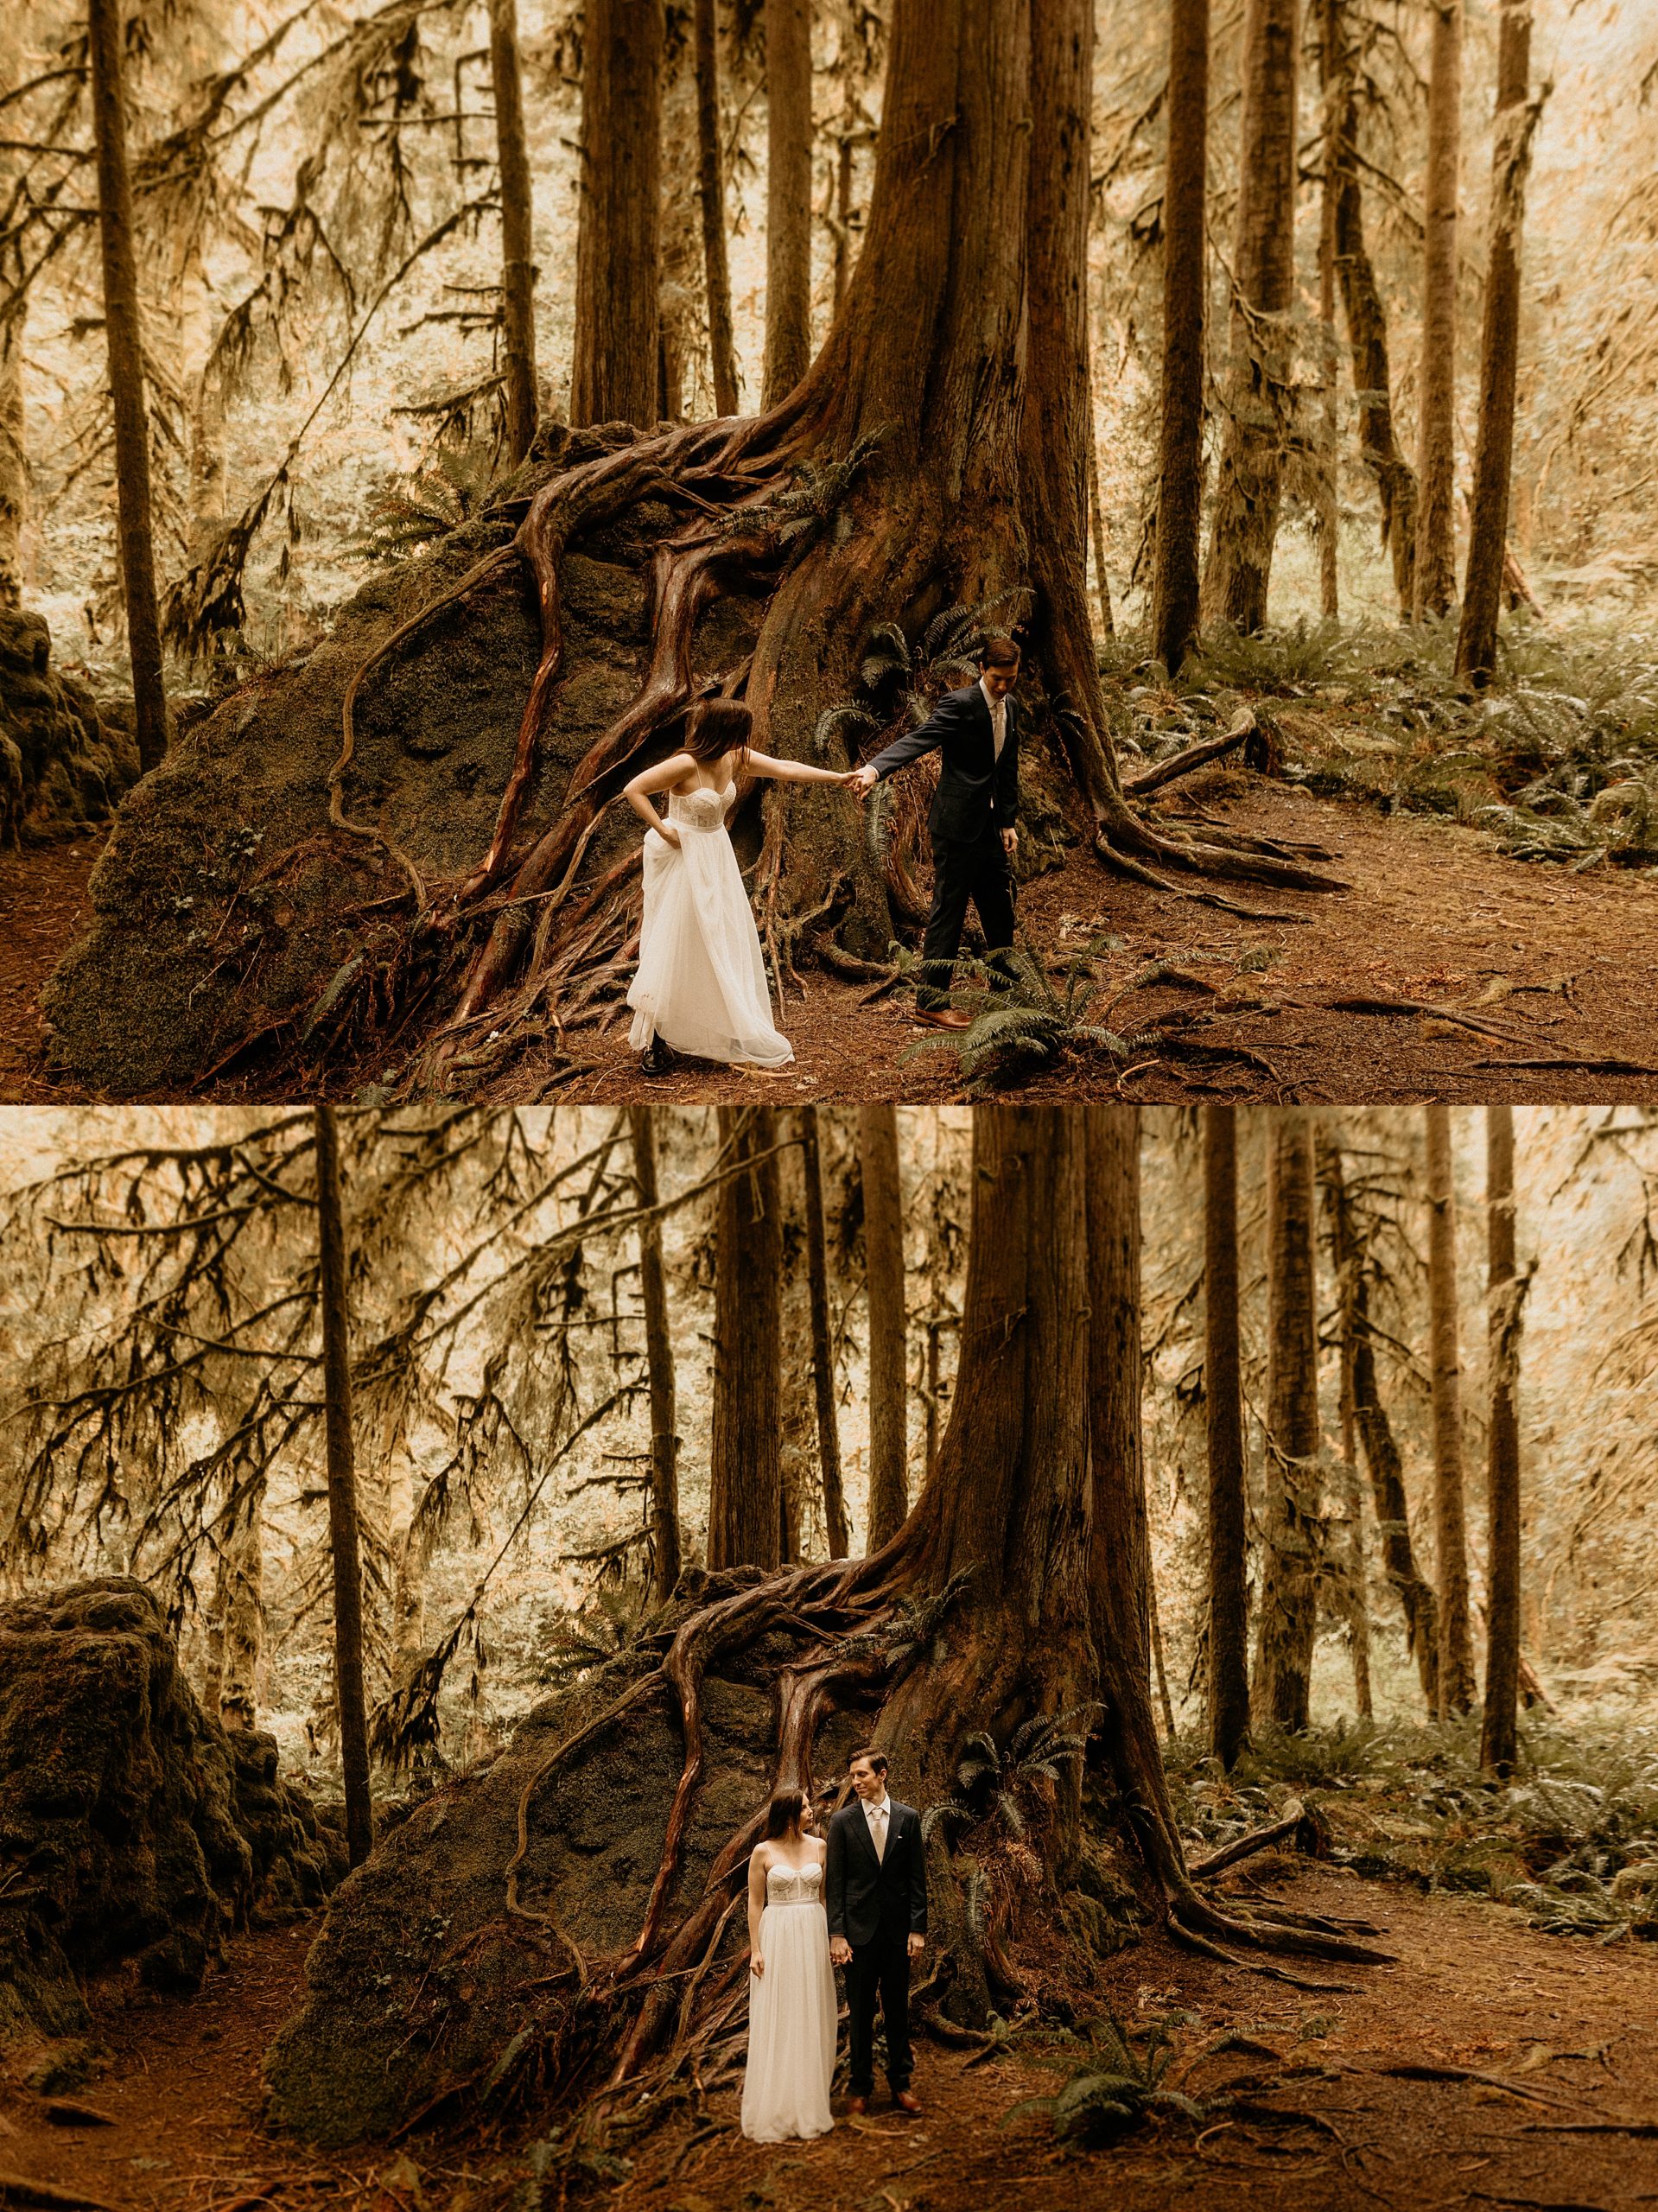 bride and groom holding hands forest landscape

